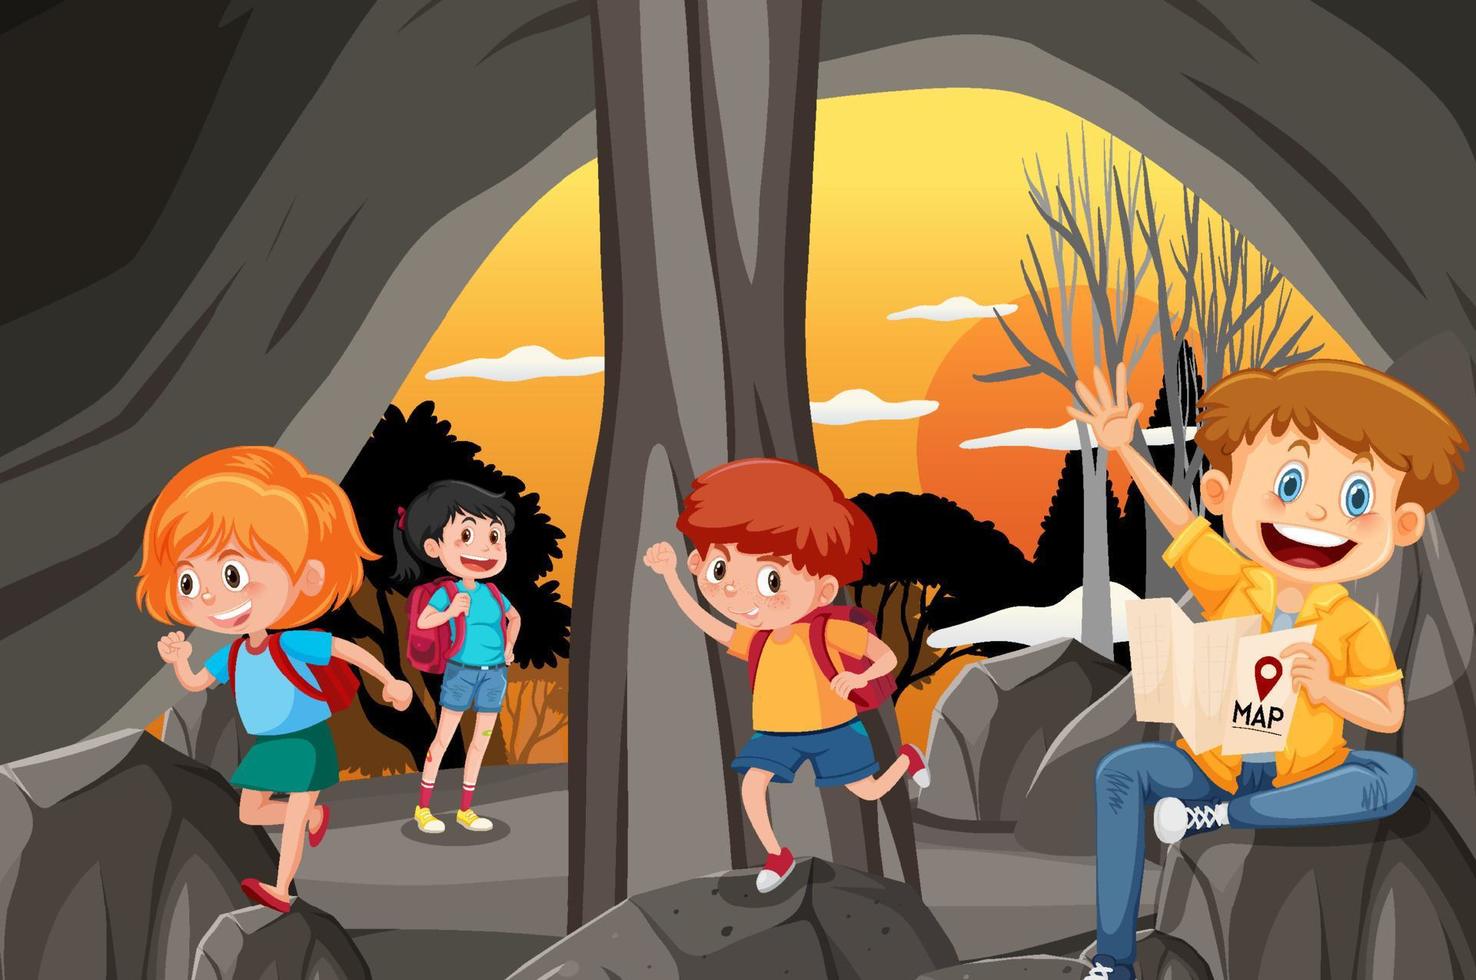 na cena da caverna com crianças explorando personagem de desenho animado vetor